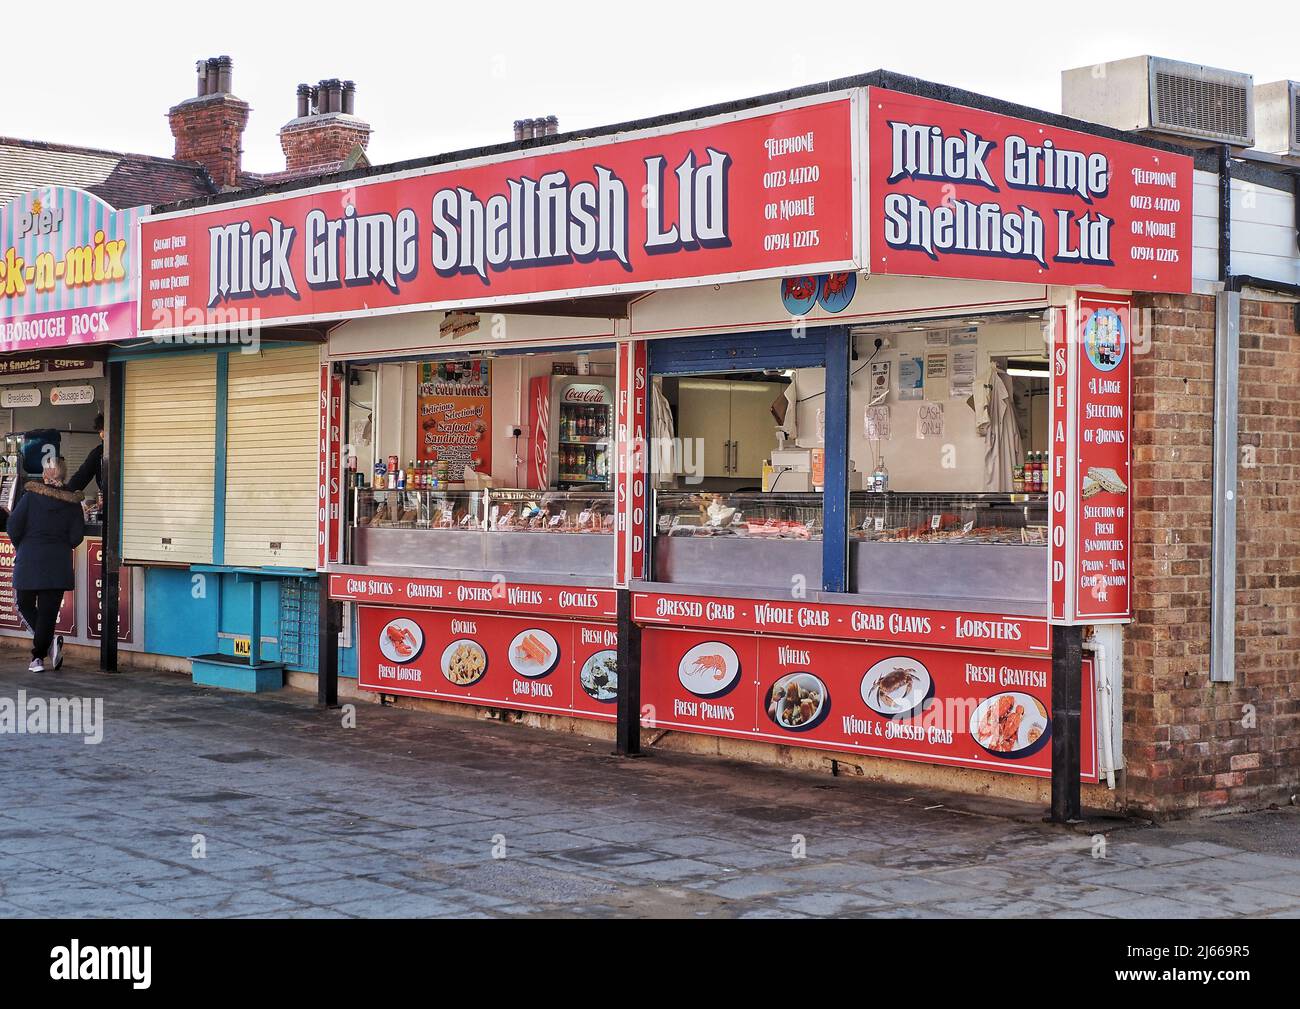 Mick Grime Shellfish Ltd Stock Photo